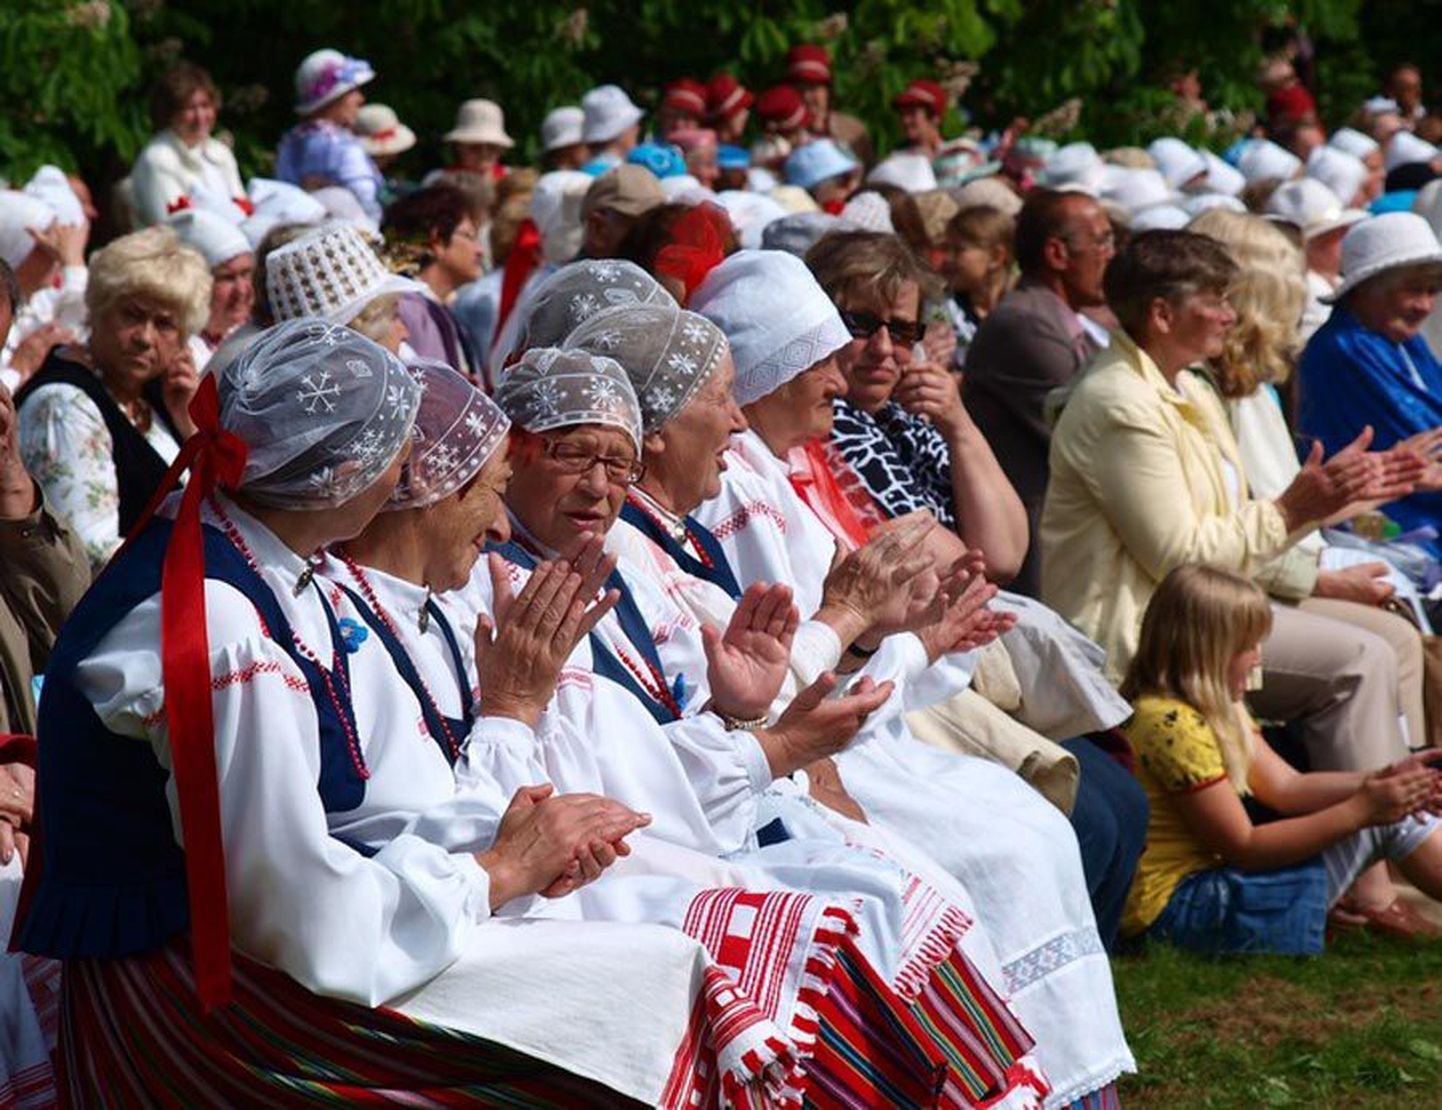 Pühapäeval, 19. mail koguneb ligi kolmsada Viljandimaa eakat tantsijat, lauljat ja pillimängijat Mõisaküla suveaeda maakonna memme-taadi peole.